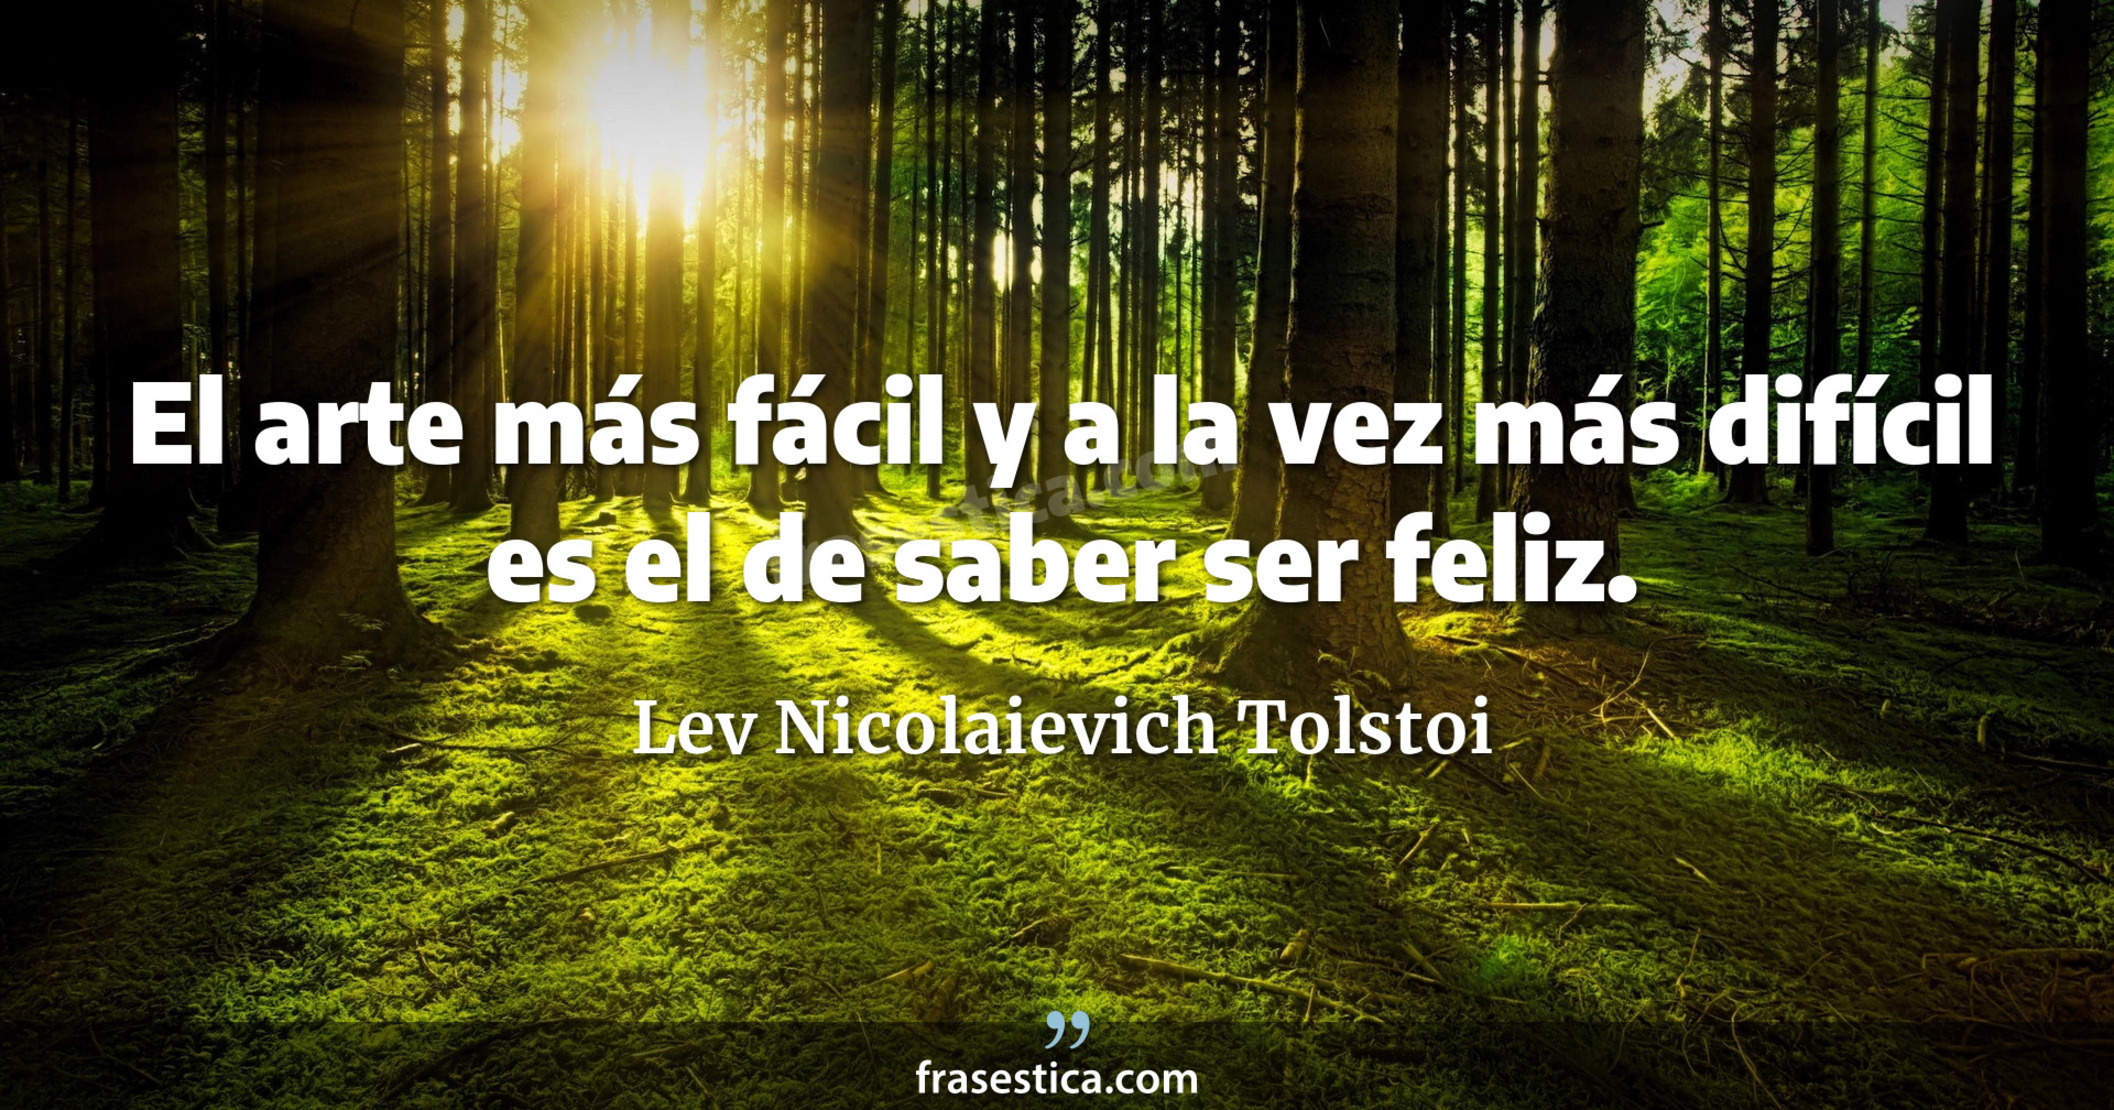 El arte más fácil y a la vez más difícil es el de saber ser feliz. - Lev Nicolaievich Tolstoi